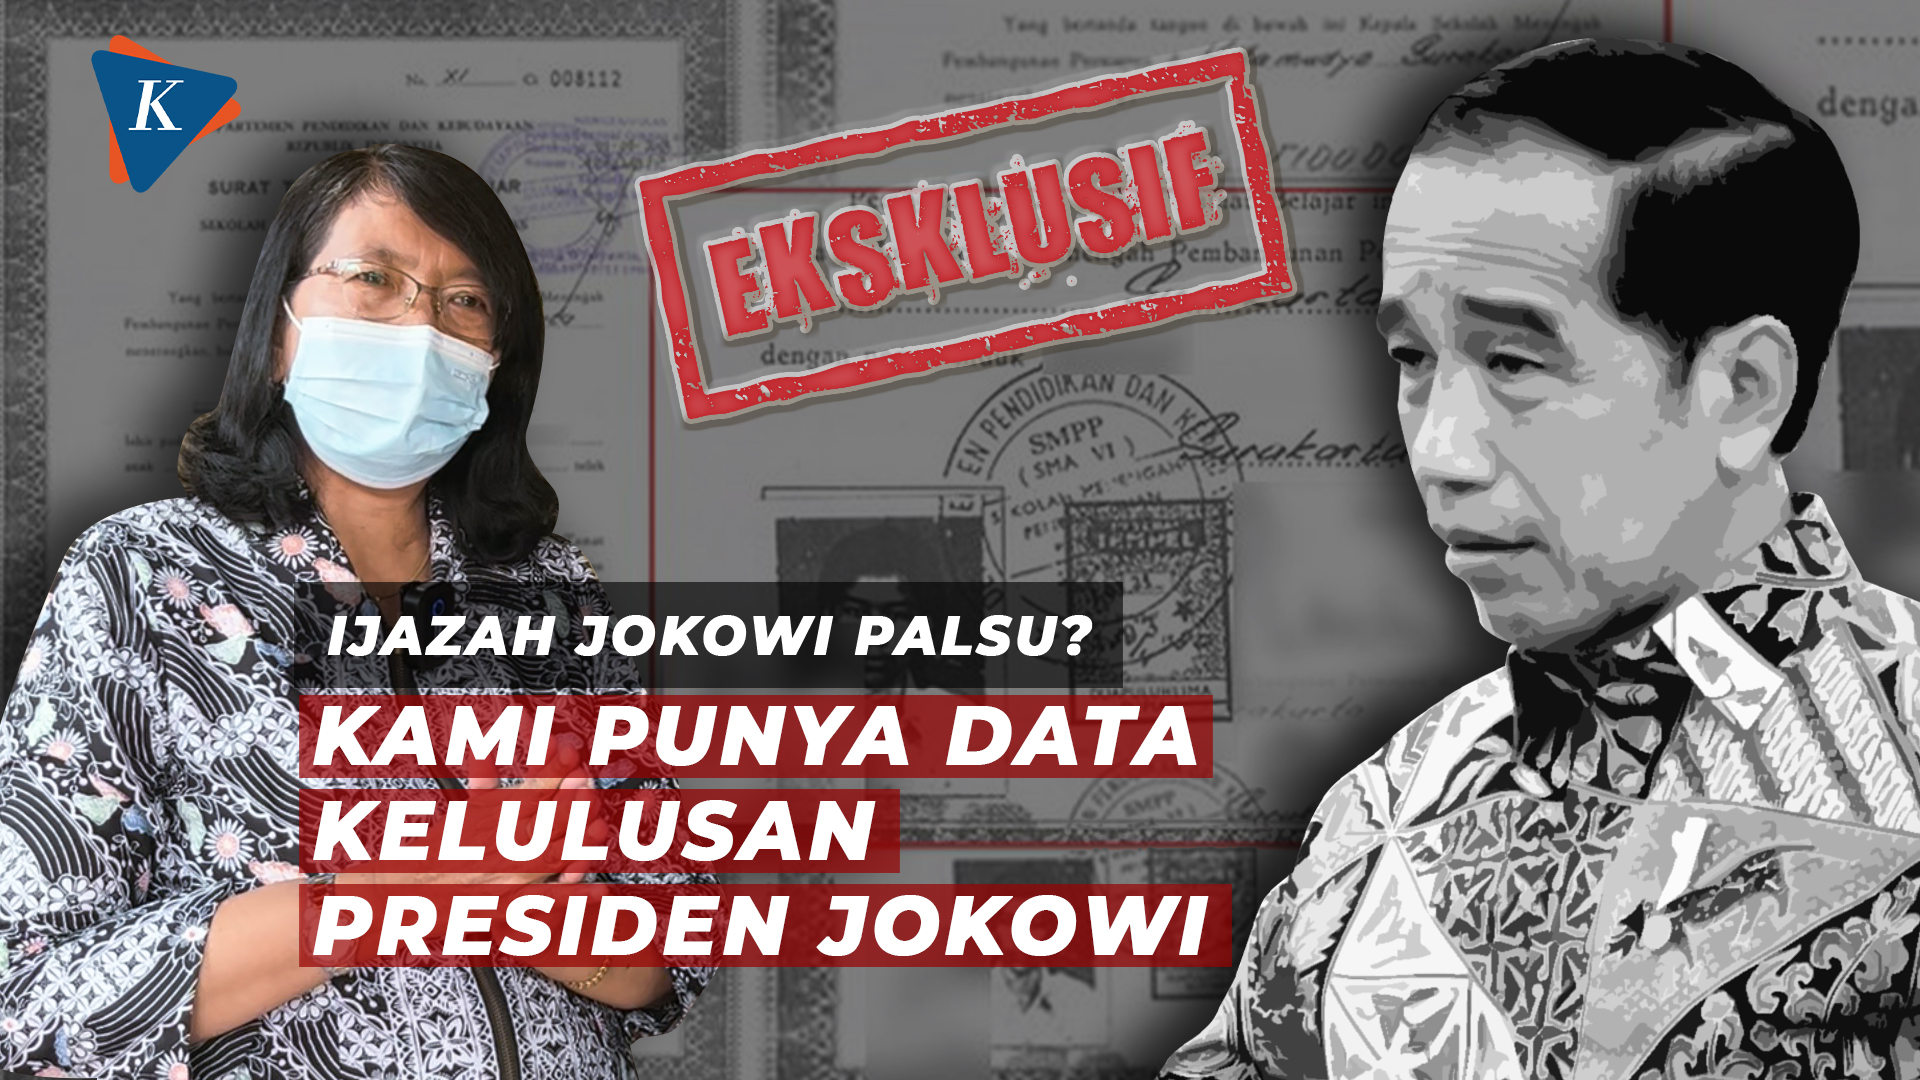 Kepala SDN 111 Tirtoyoso Tunjukkan Bukti Kelulusan Presiden Jokowi